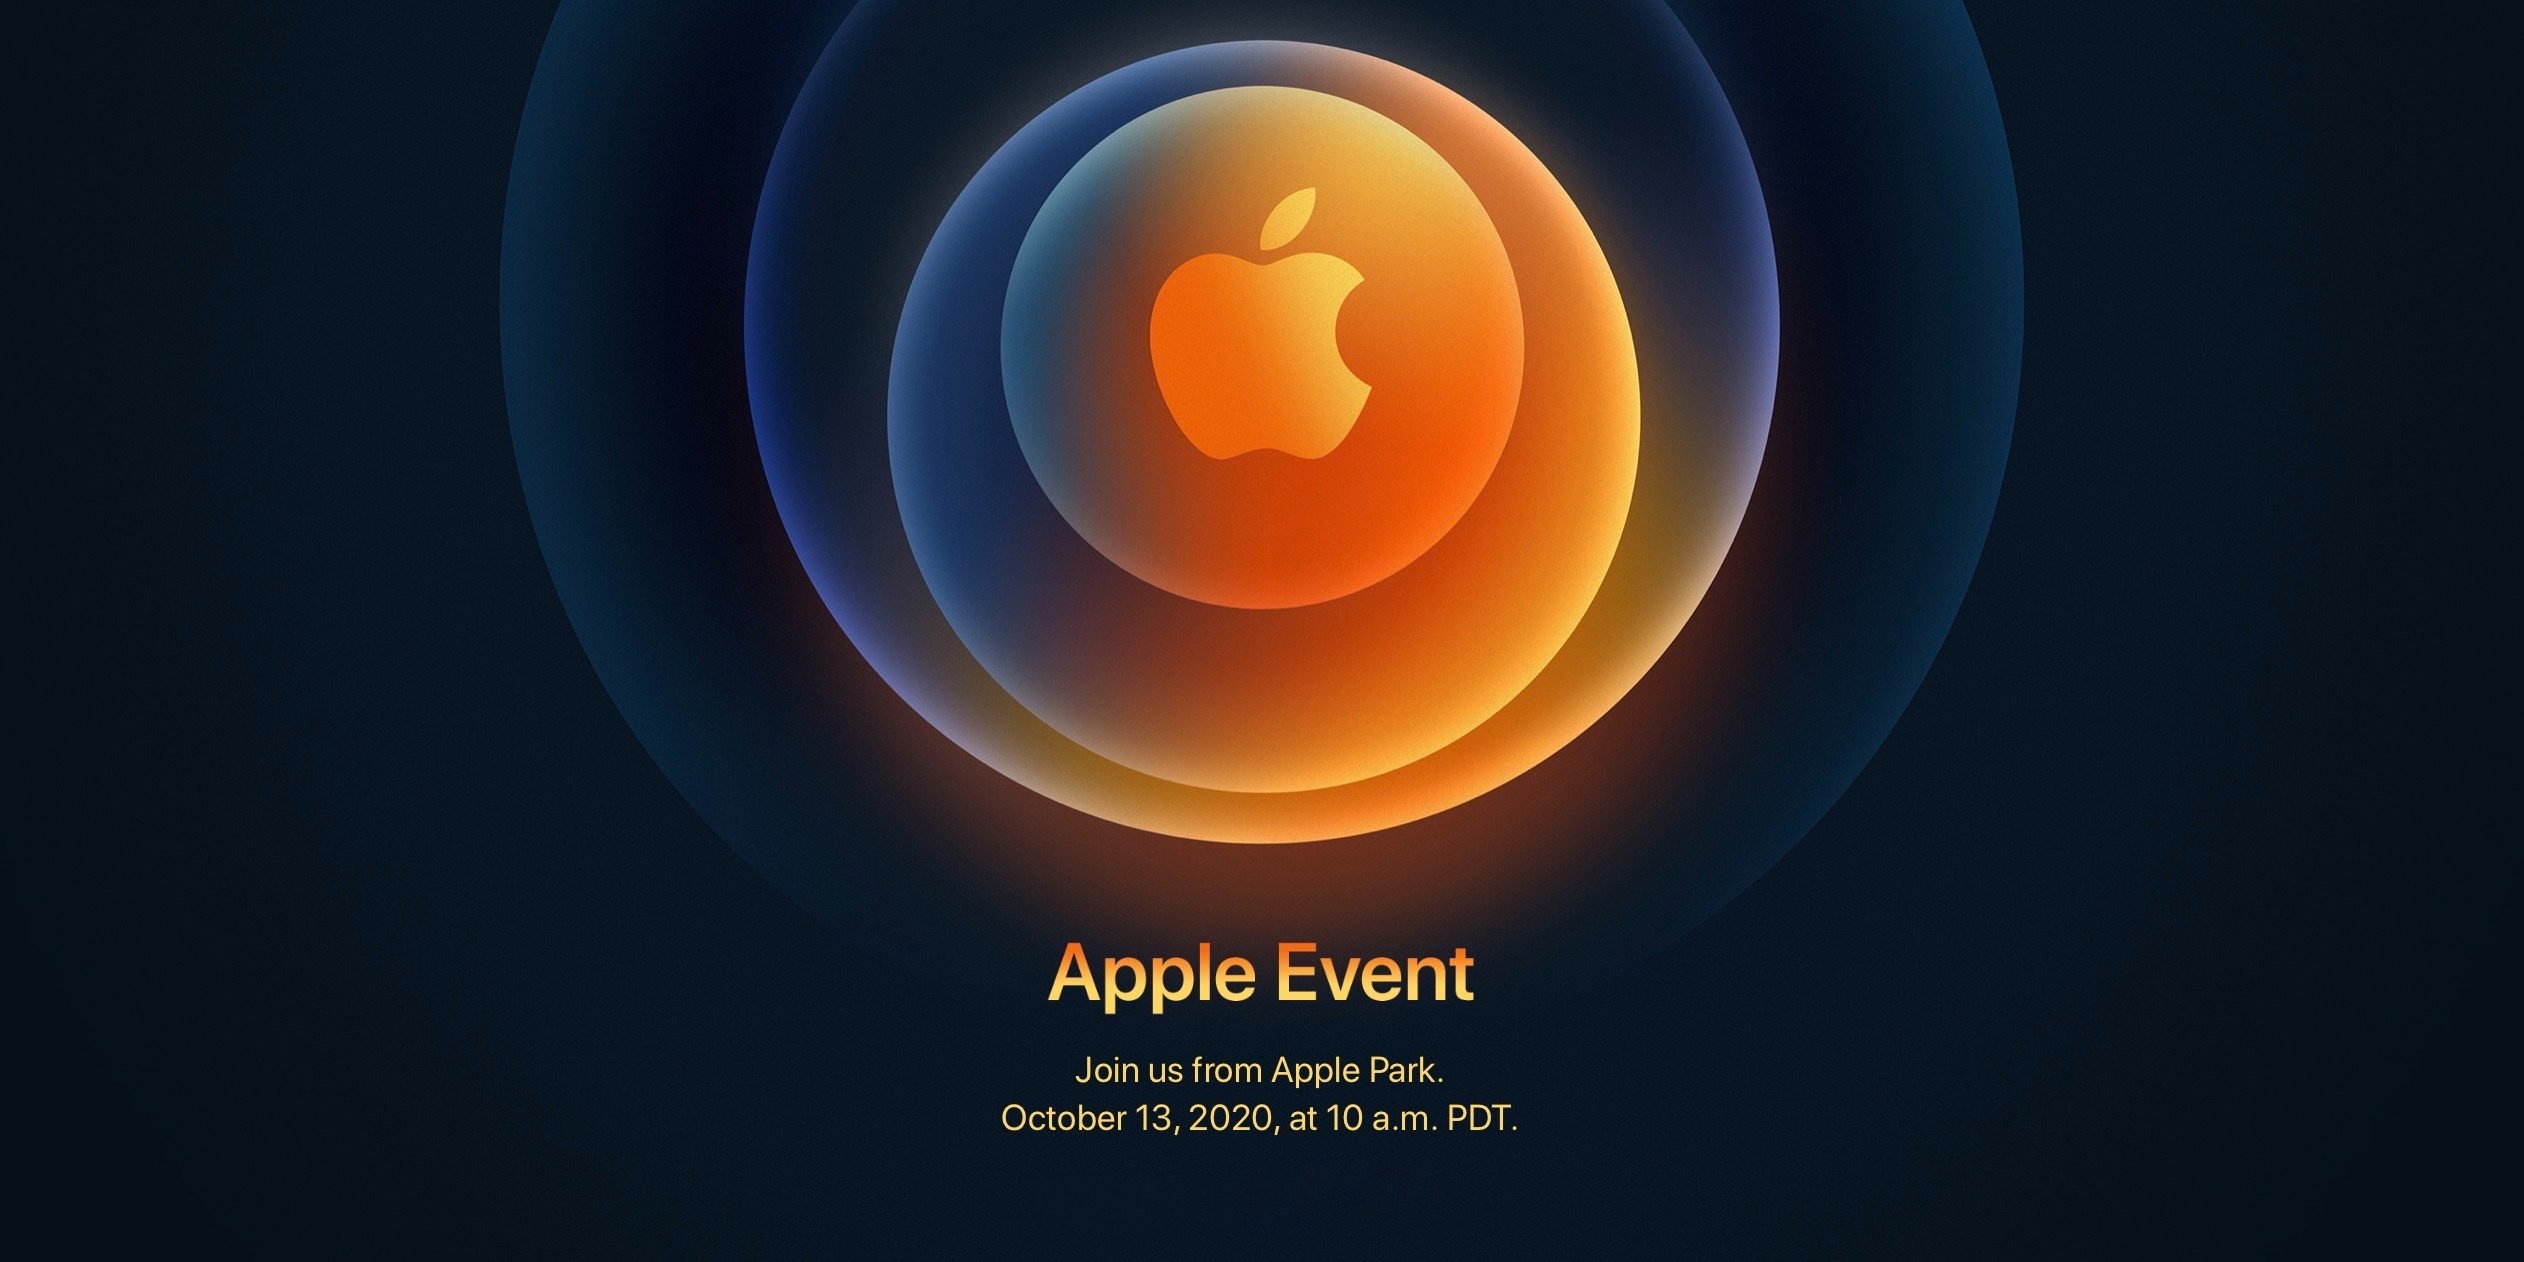 Apple xác nhận sự kiện ra mắt iPhone 12 'Hi, Speed' vào ngày 14/10 sắp tới